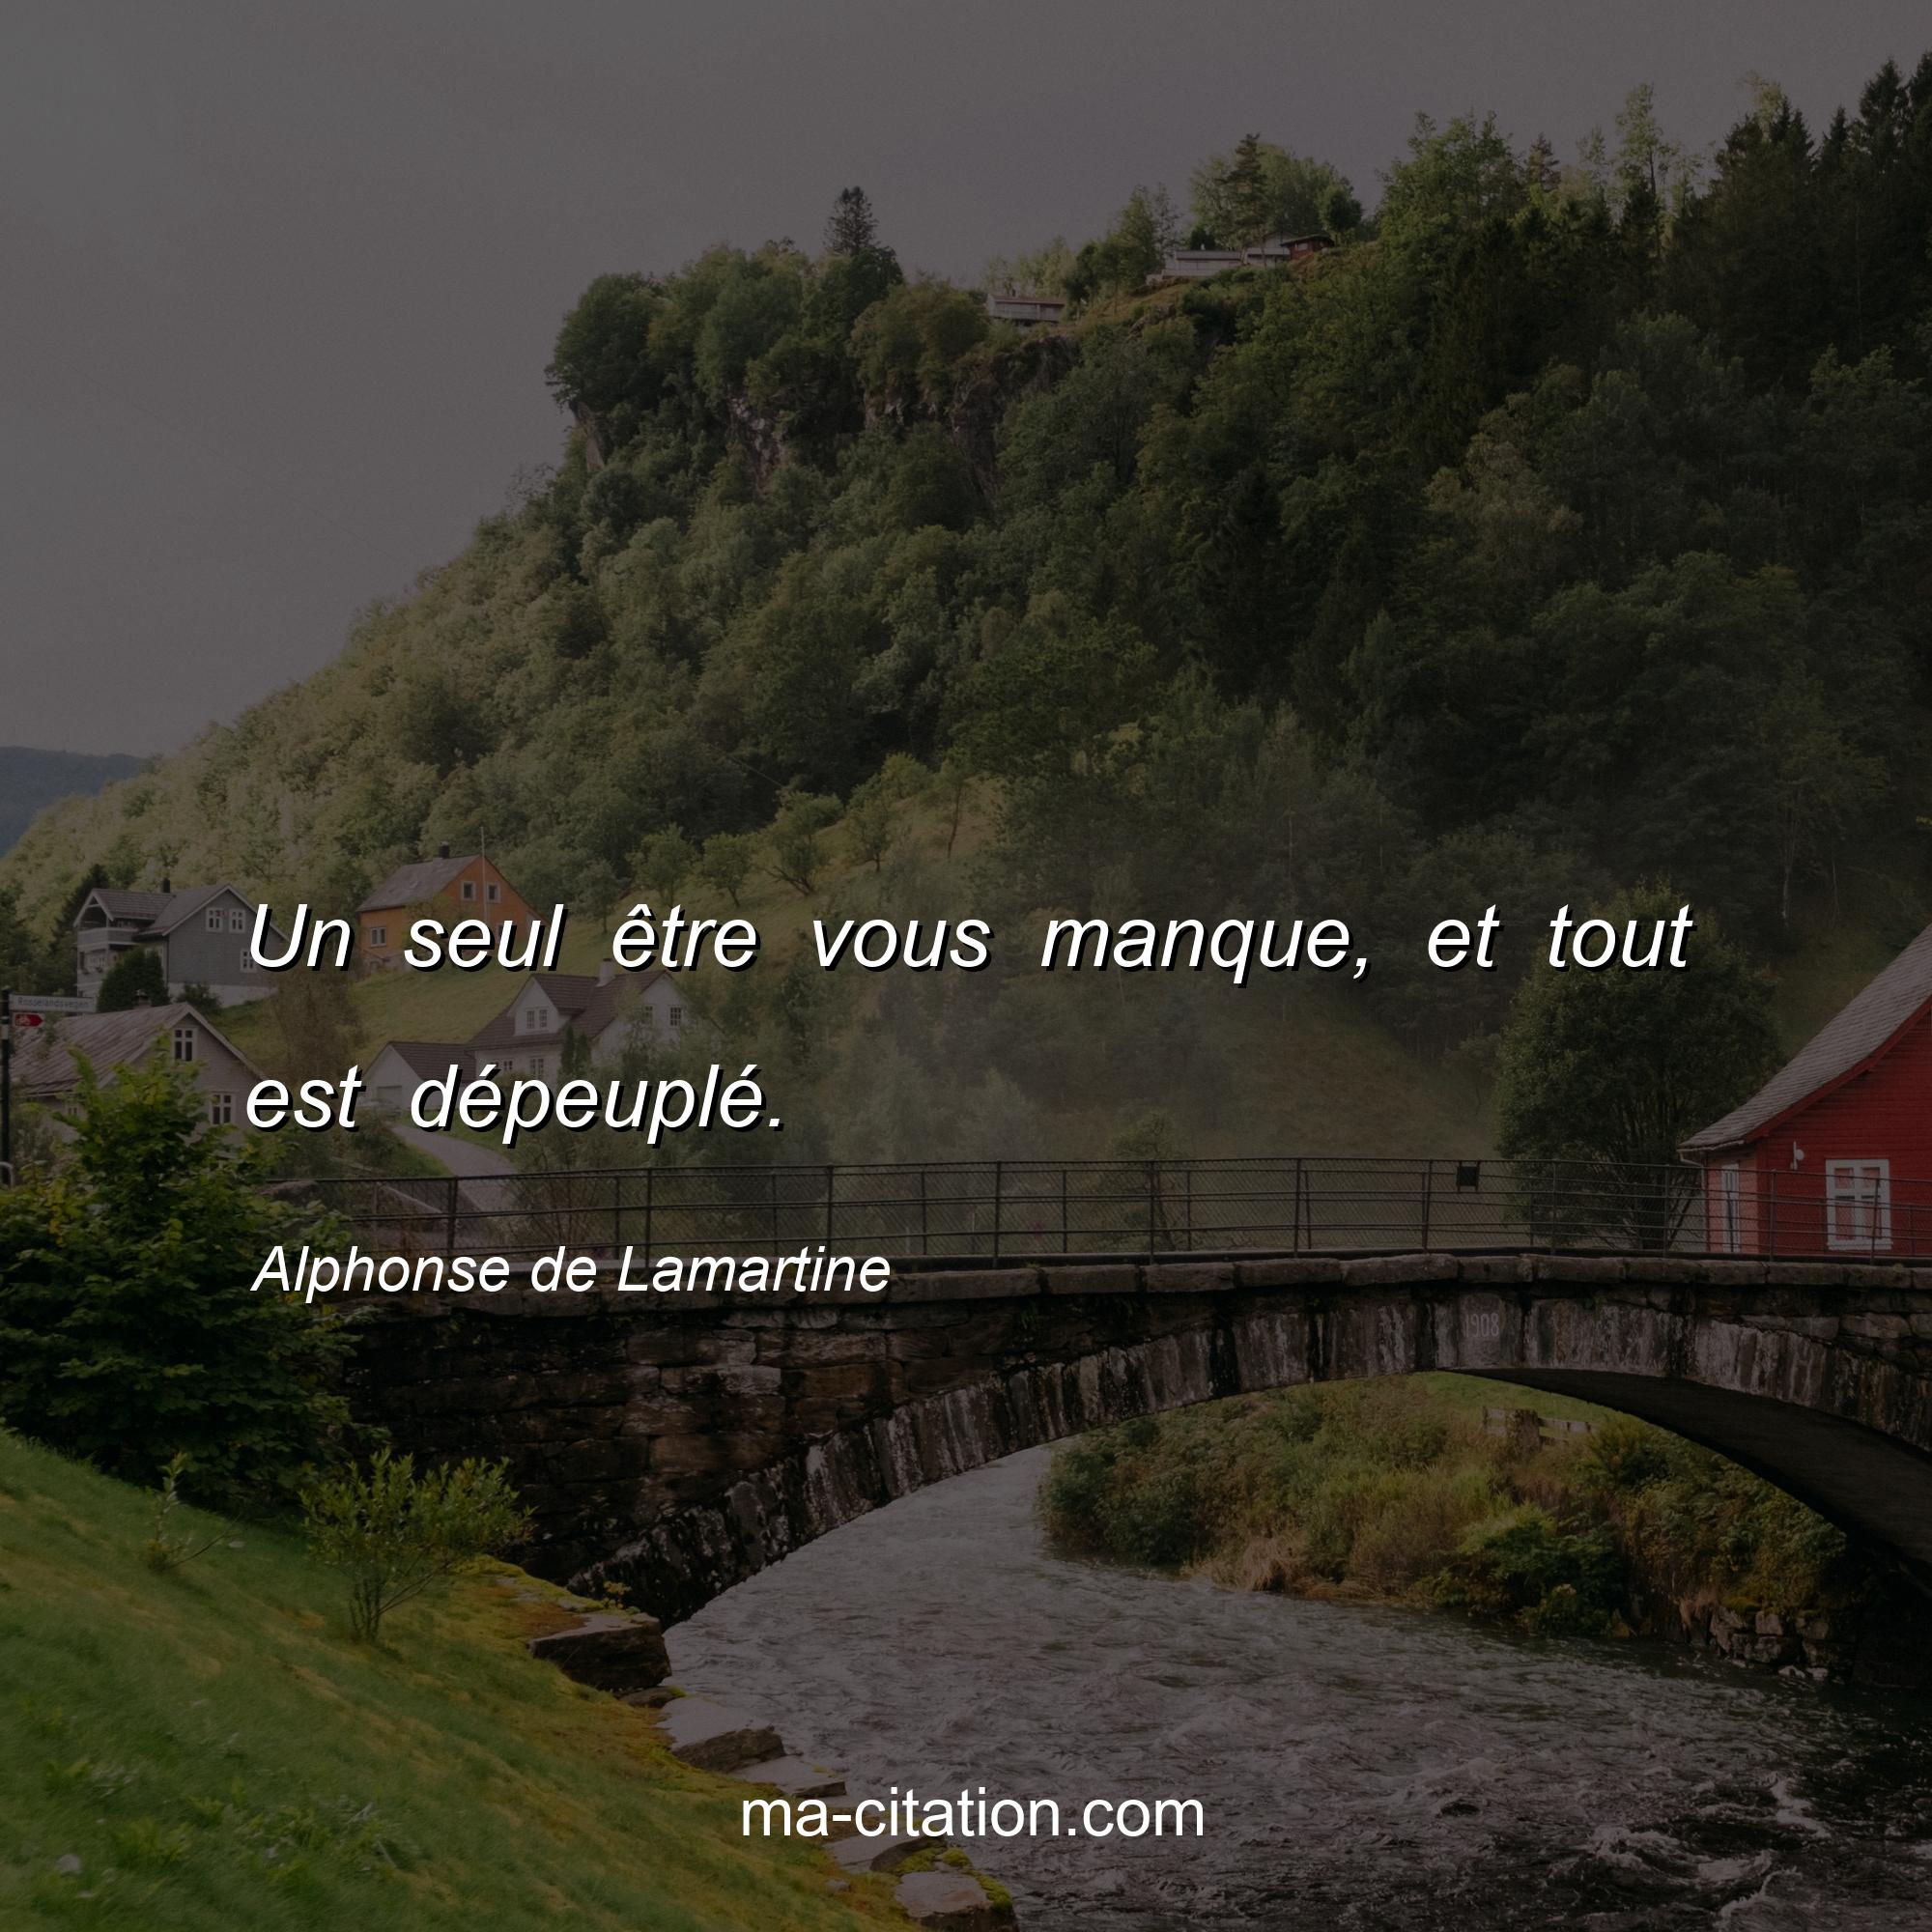 Alphonse de Lamartine : Un seul être vous manque, et tout est dépeuplé.